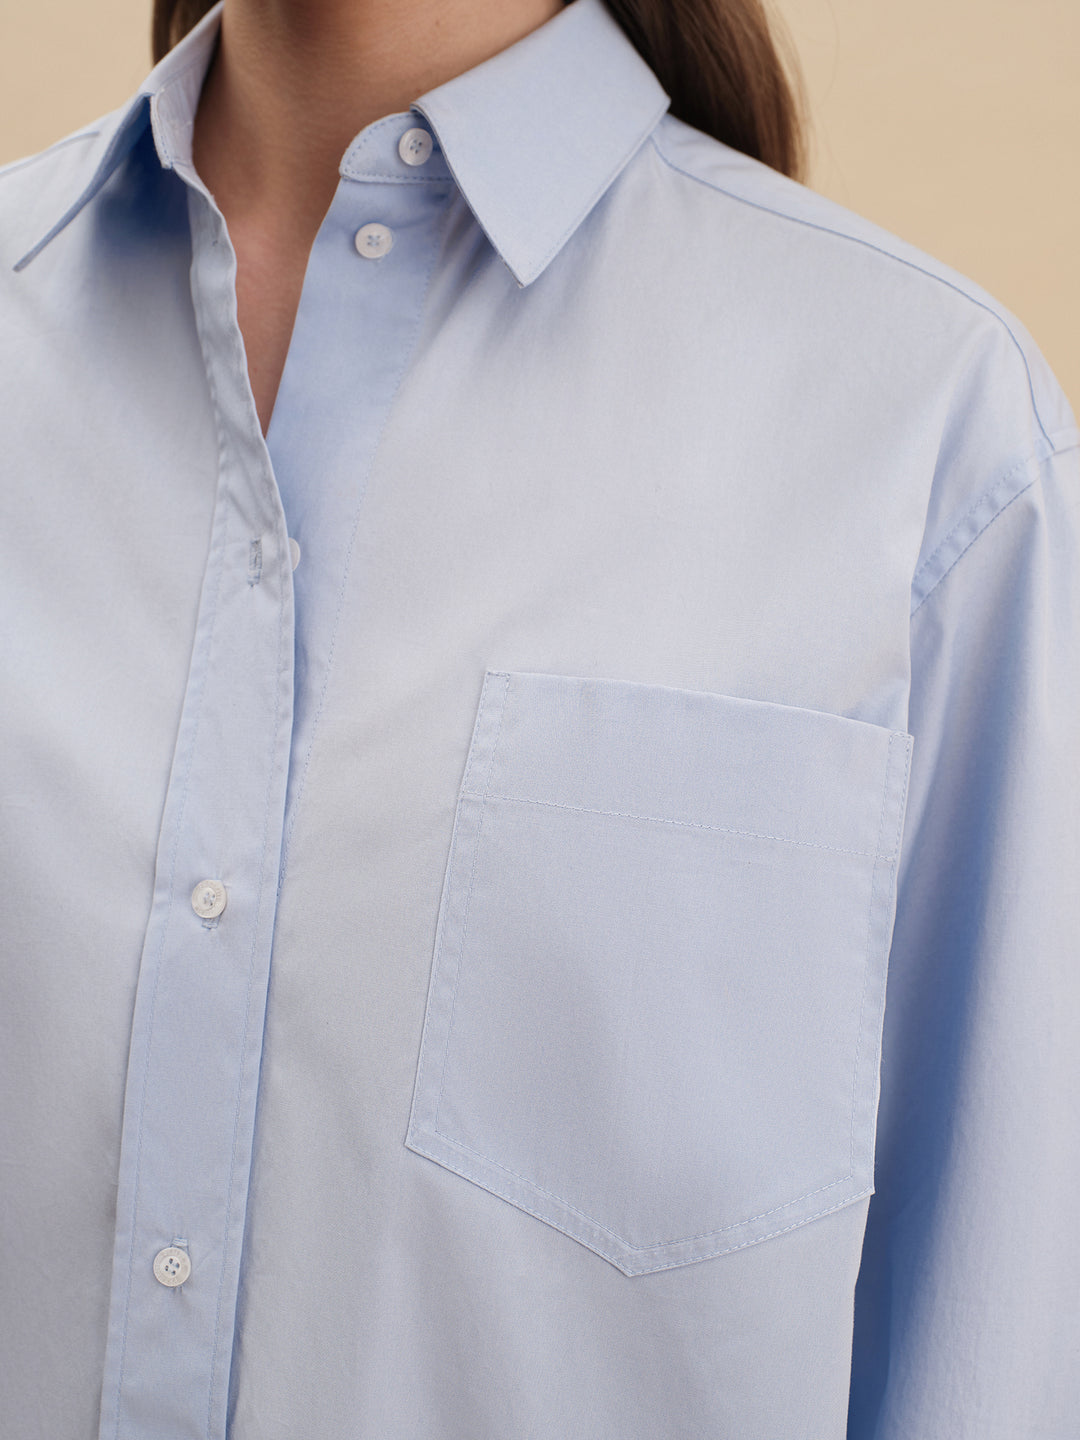 cotton shirt - women - blue - loose fit